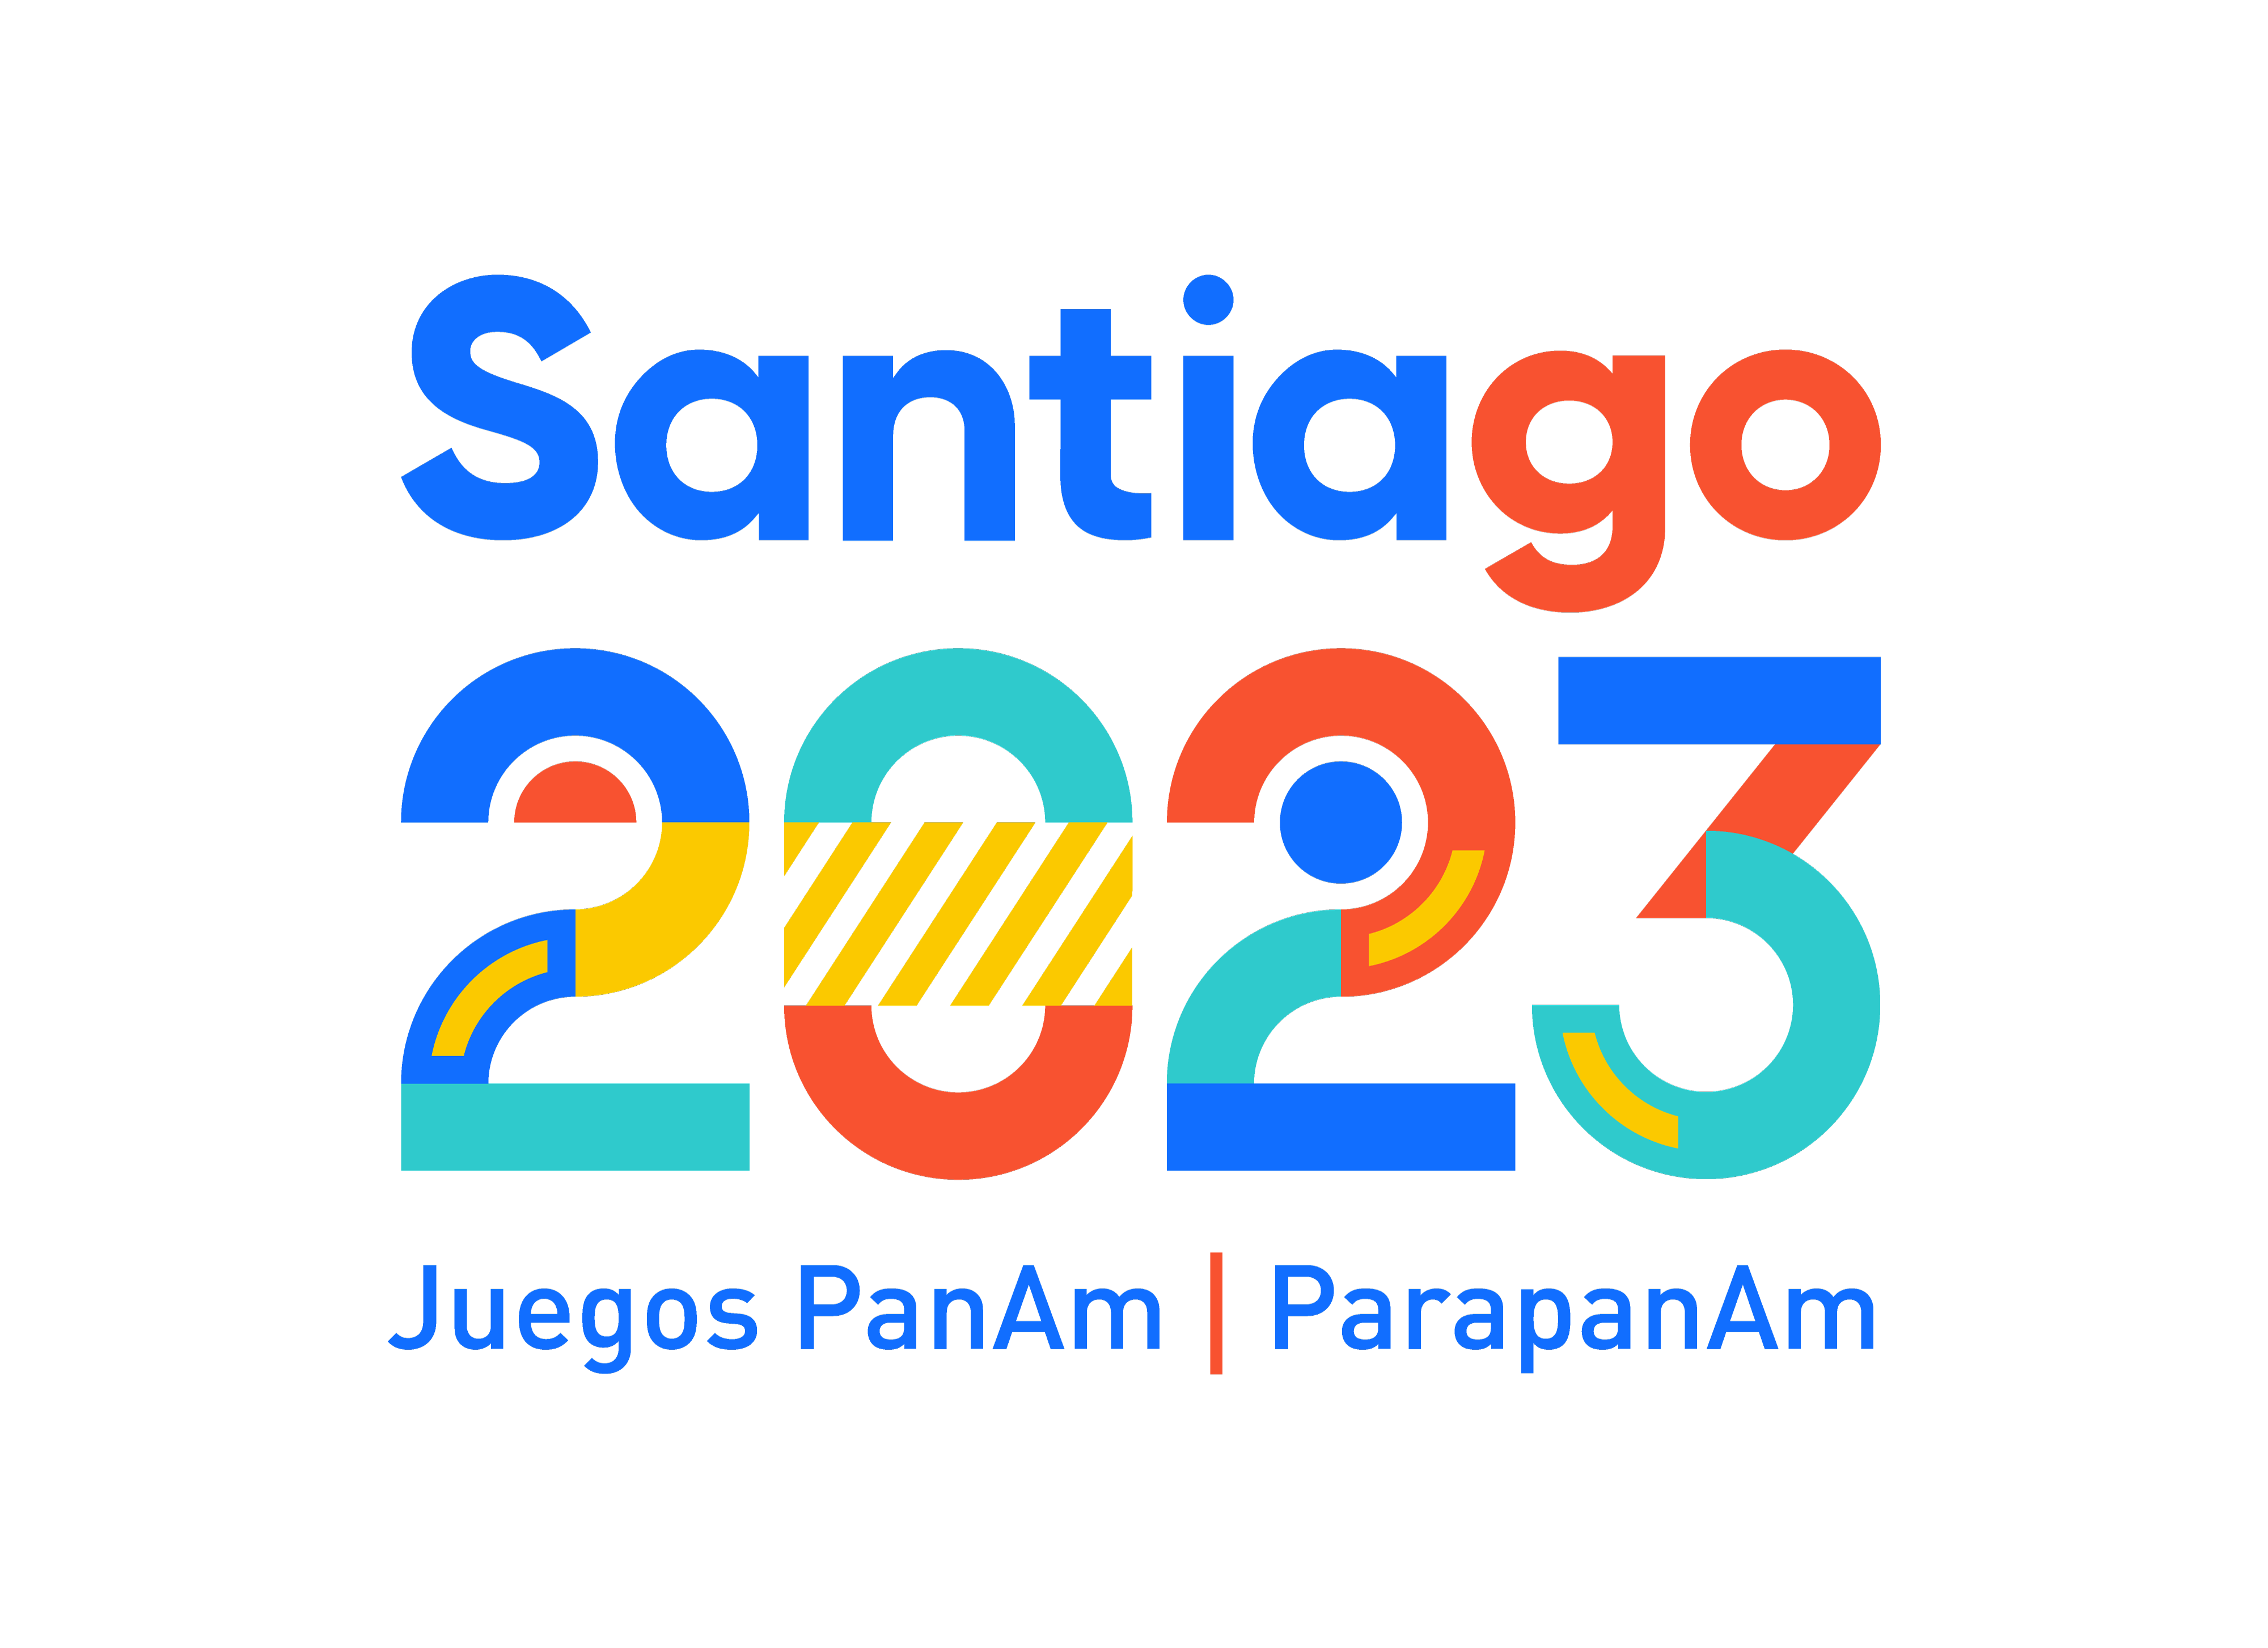 Quadro de medalhas dos Jogos Pan-Americanos de Santiago